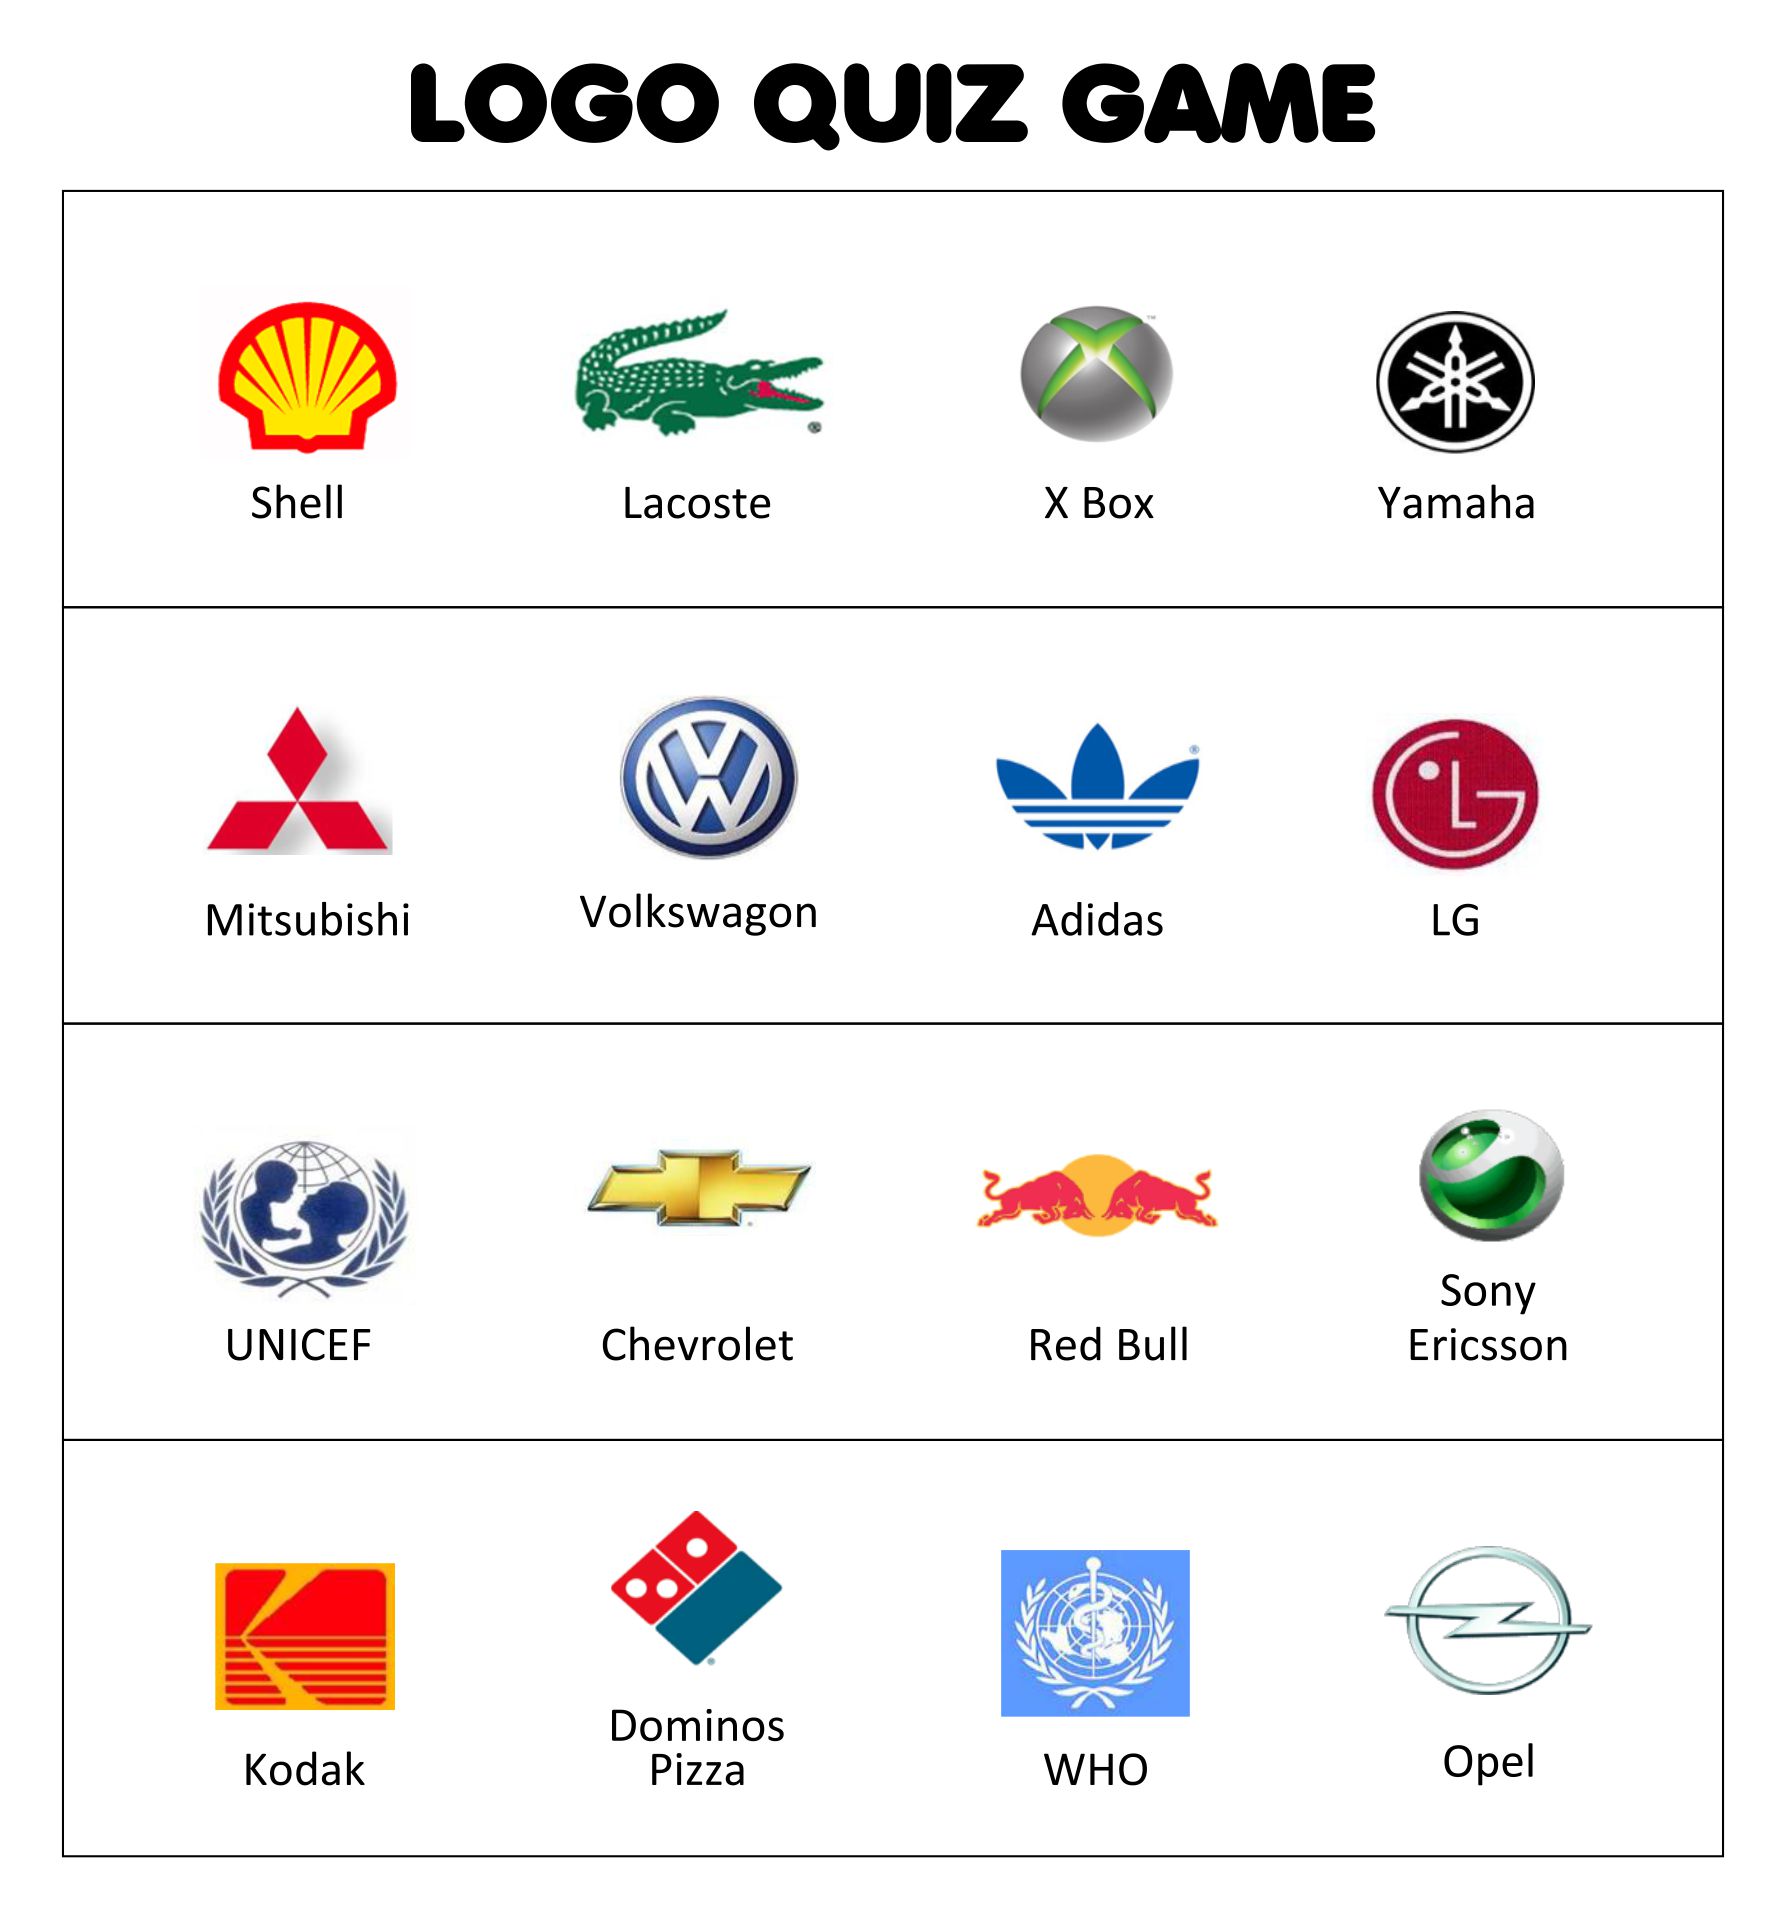 Car logo quiz level 2 - Walkthrough - All Answers - YouTube